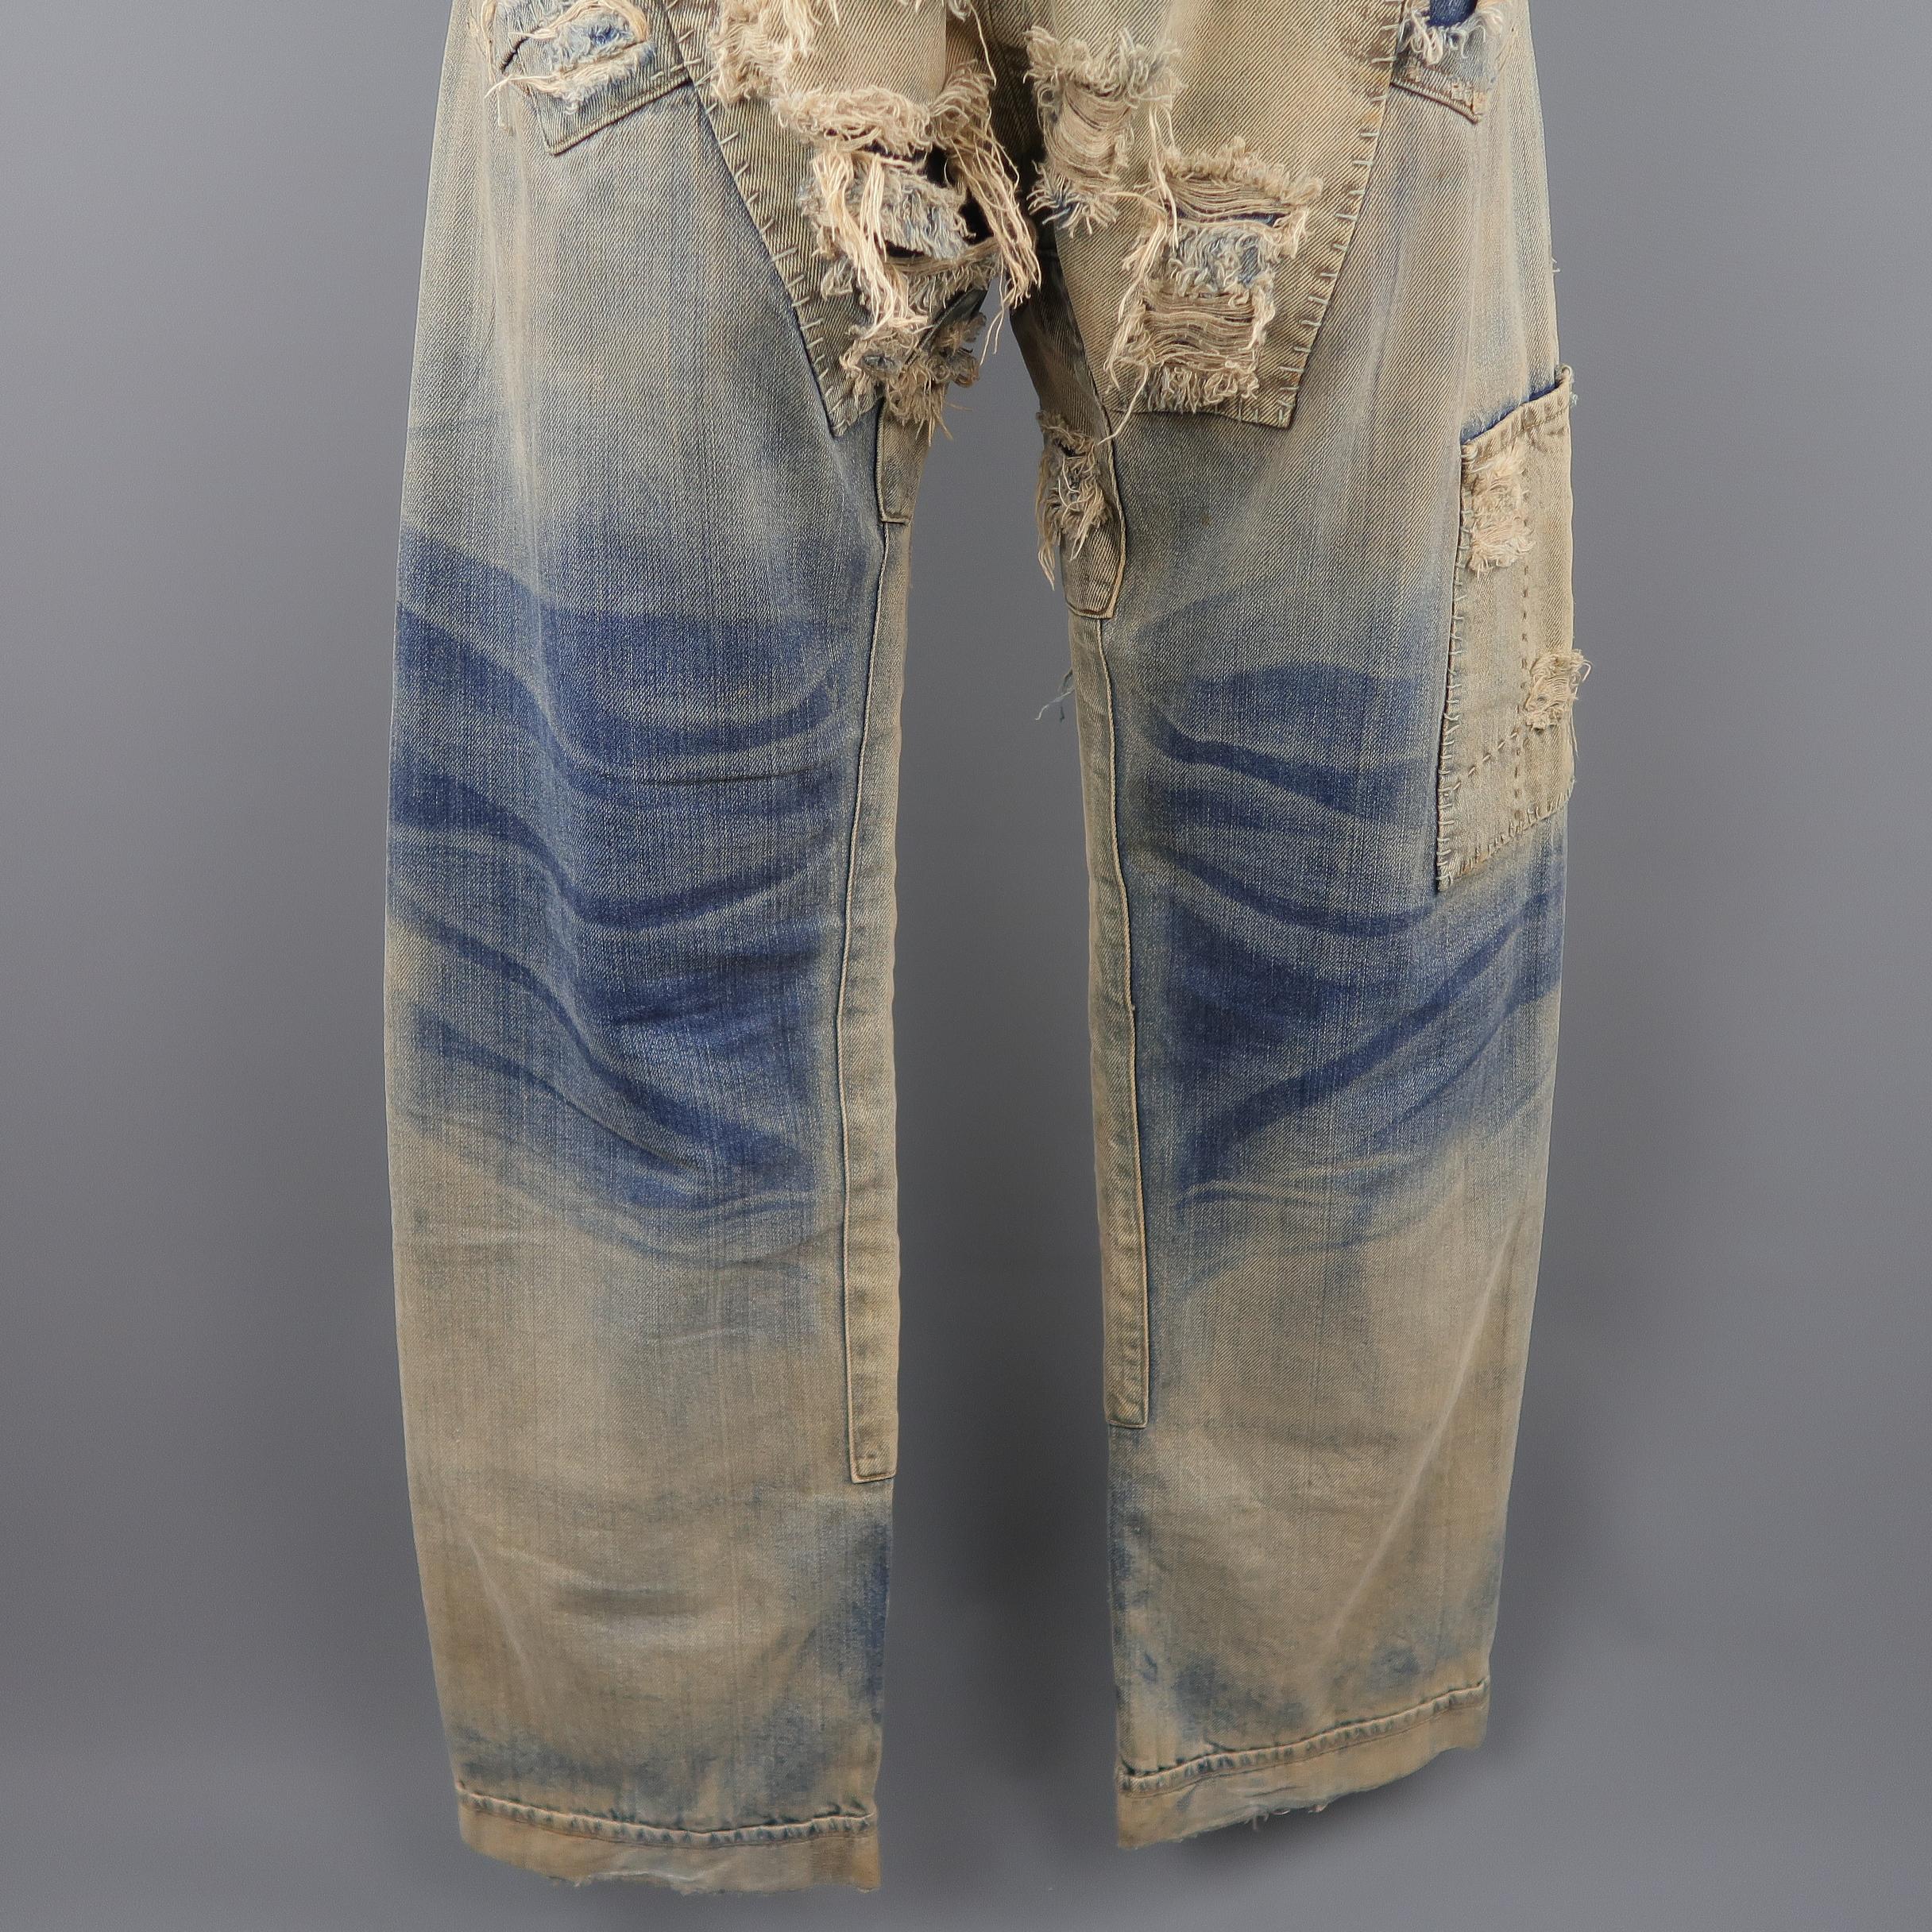 Abbigliamento Abbigliamento genere neutro per adulti Jeans 31 x 29 Vintage Levis 501's Bleached Denim Distressed Made in USA Jeans 